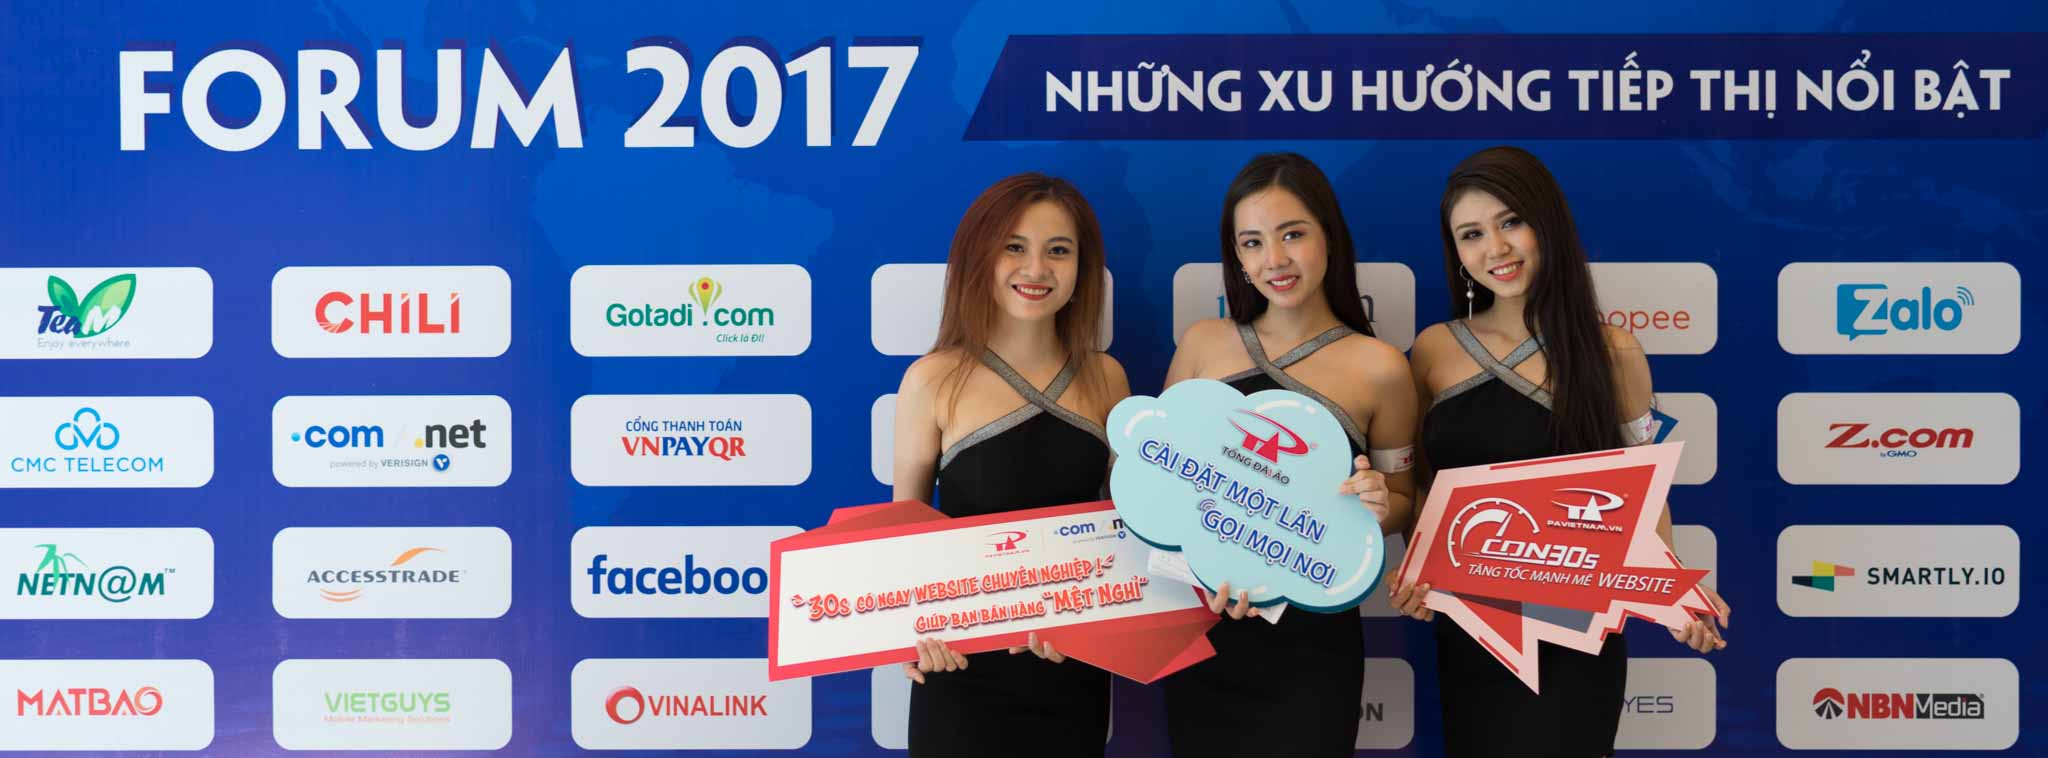 Hình ảnh Diễn đàn Tiếp thị trực tuyến 2017 tổ chức tại thành phố Hồ Chí Minh